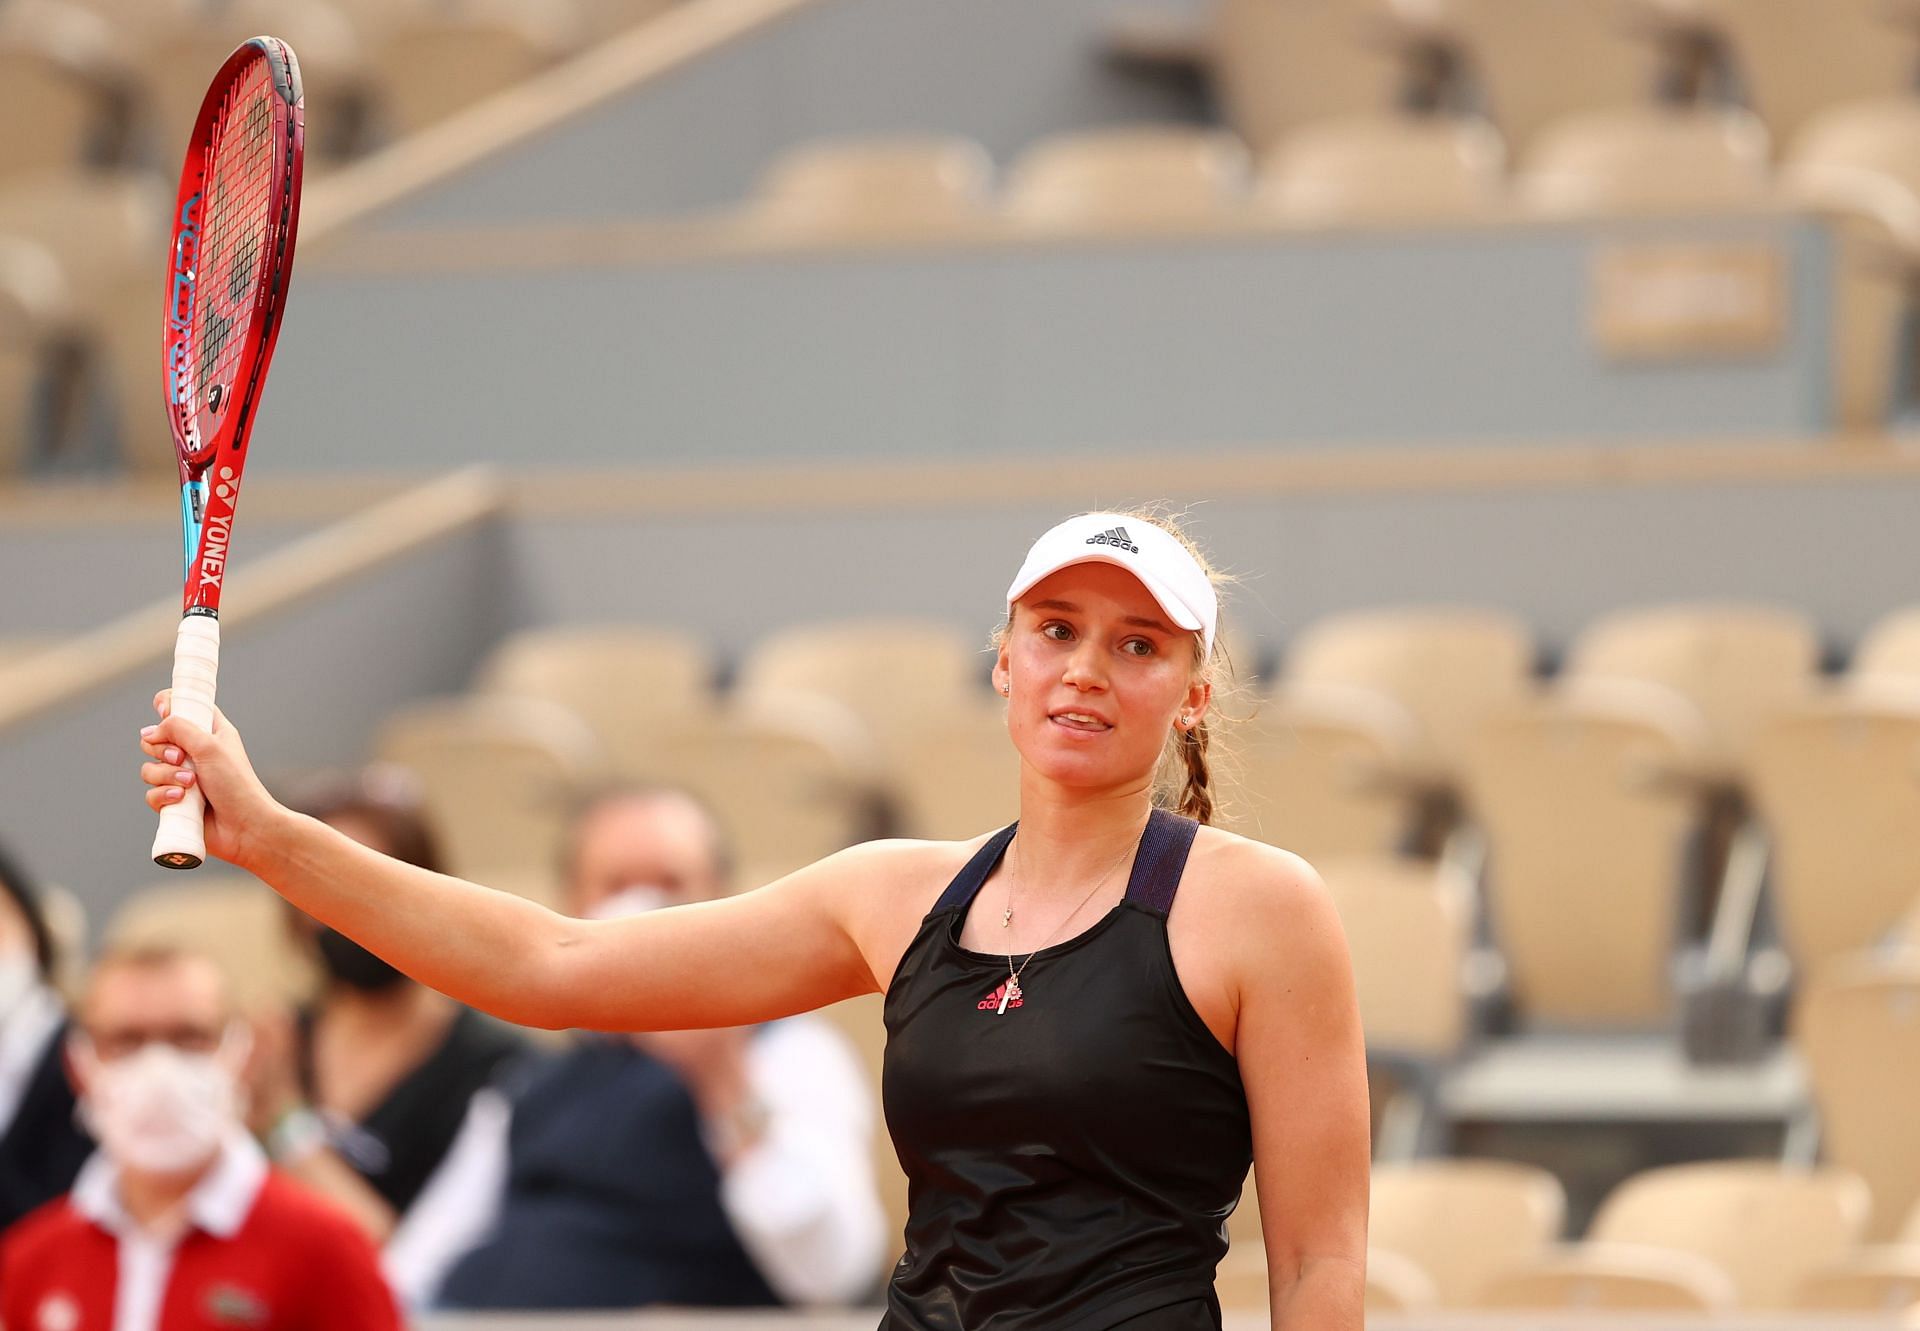 Elena Rybakina at the 2021 French Open